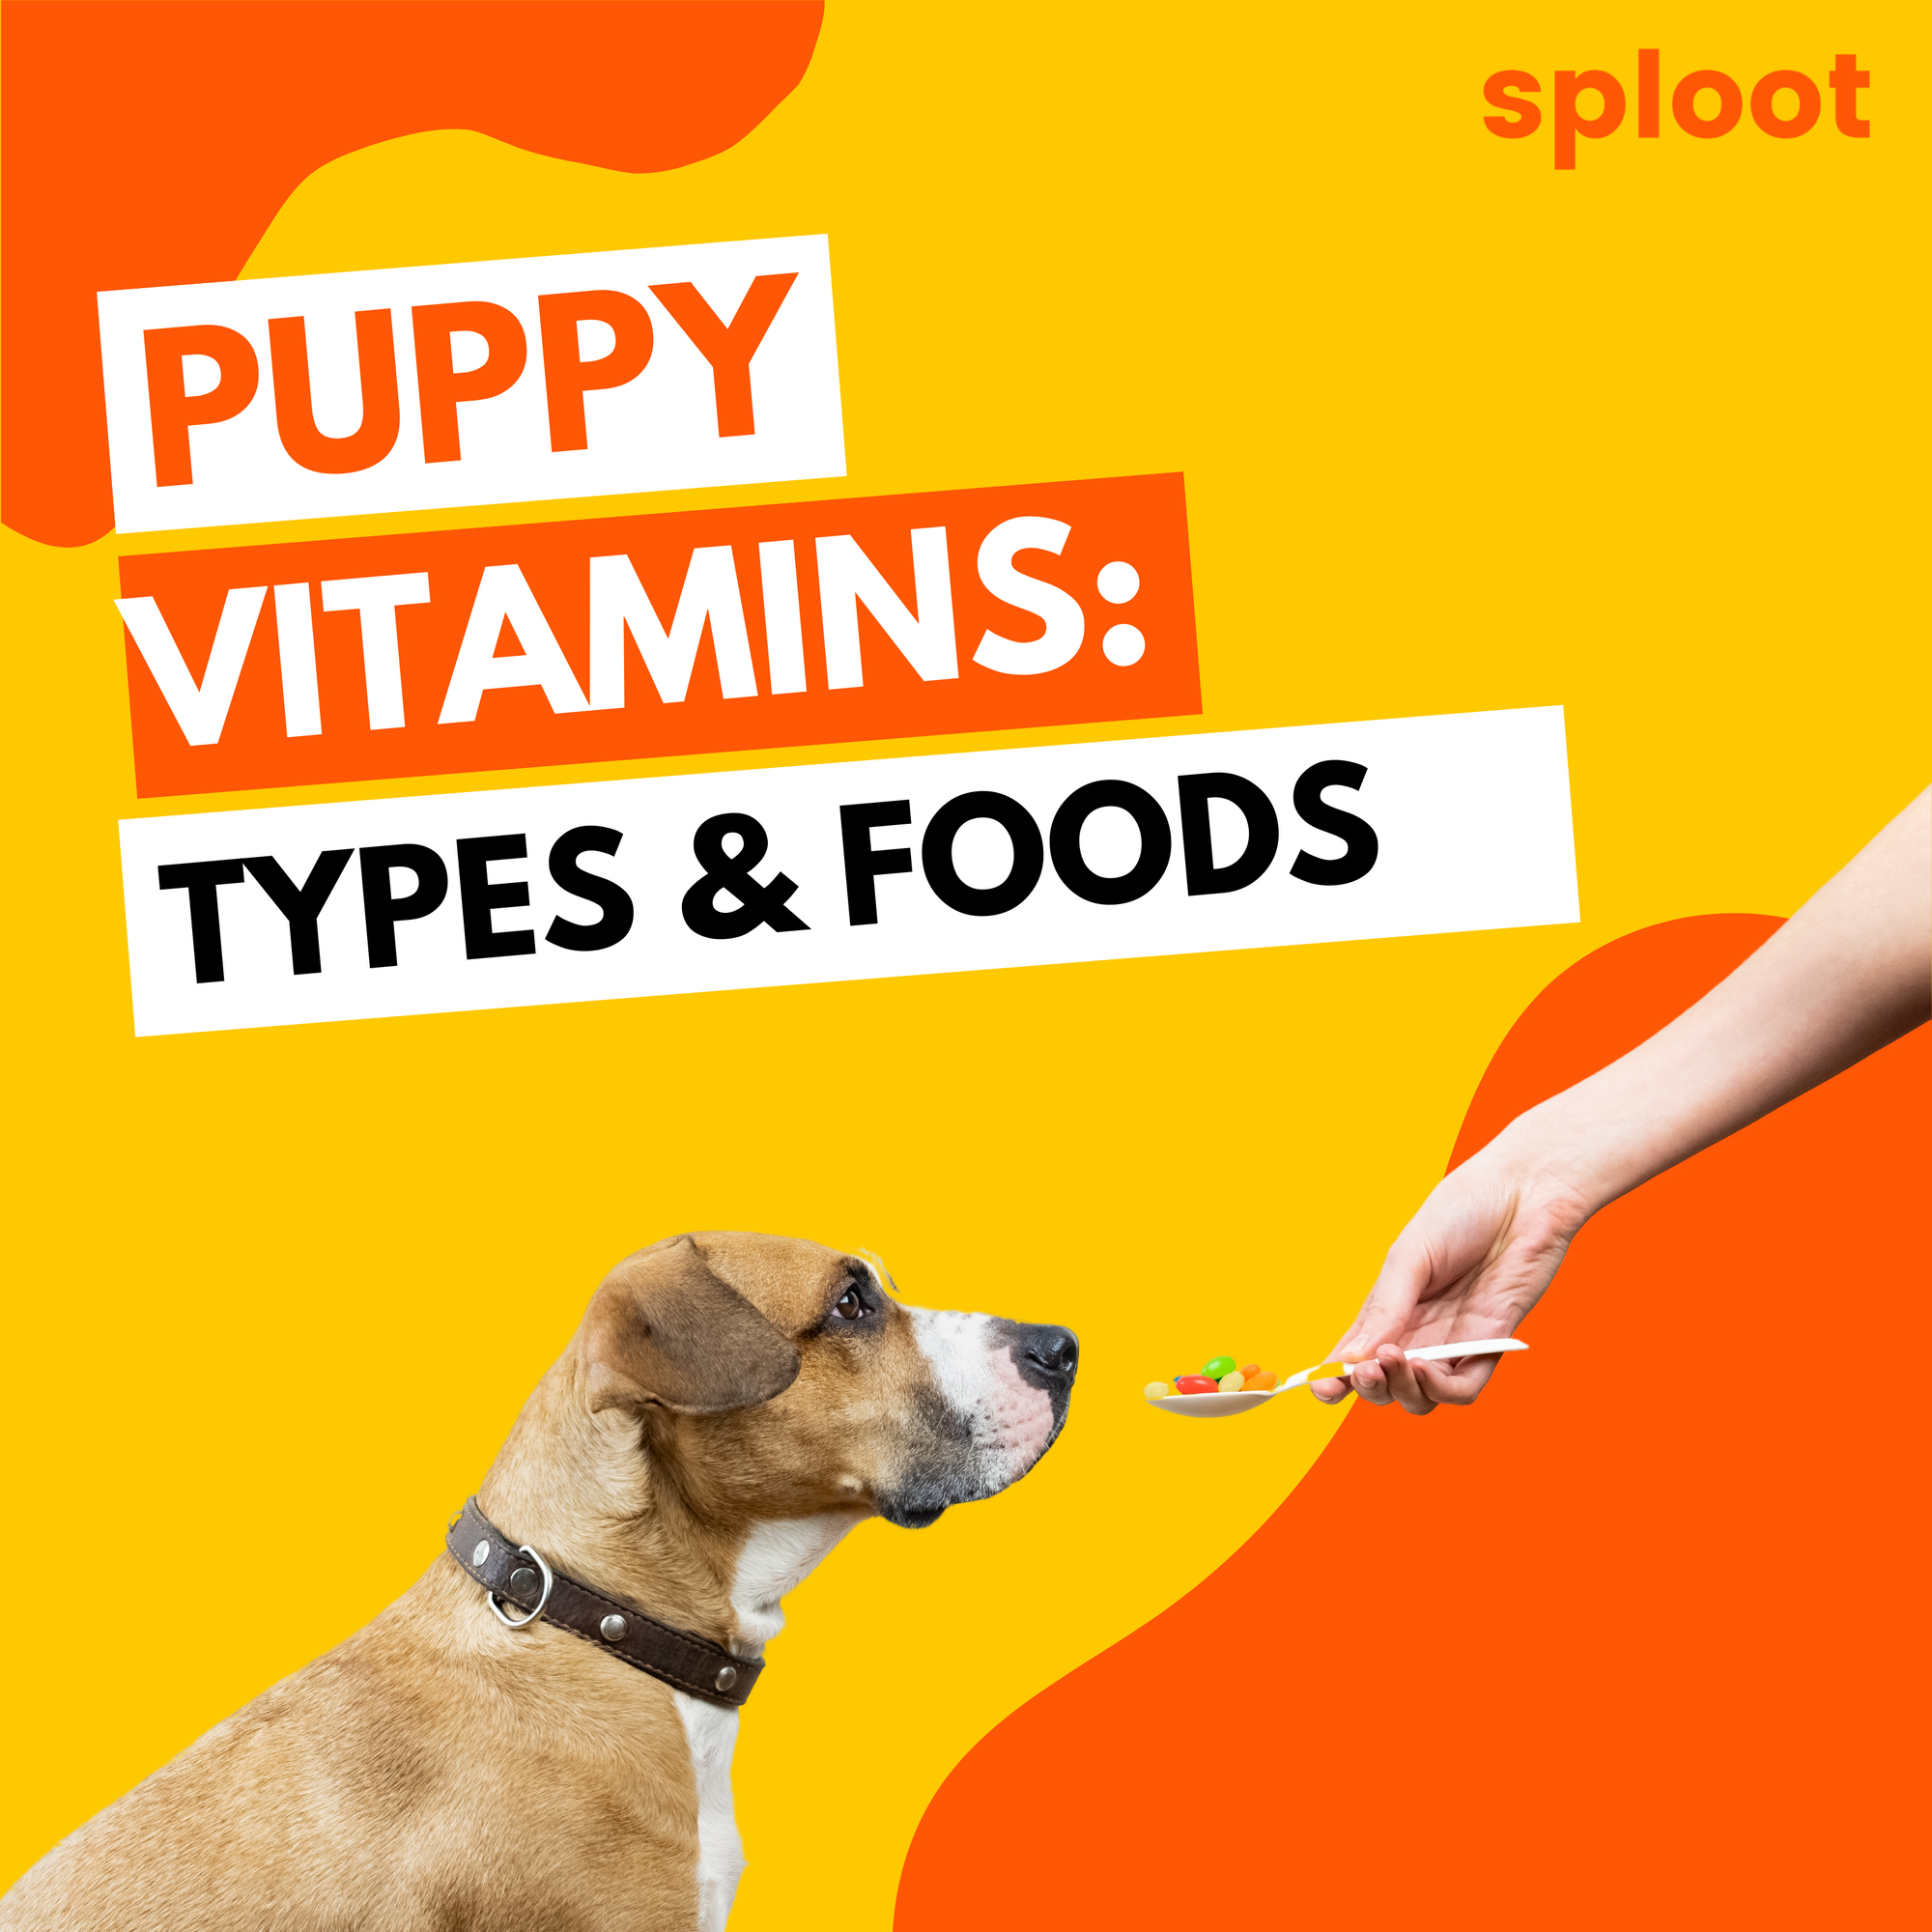 Puppy Vitamins: Types & Foods